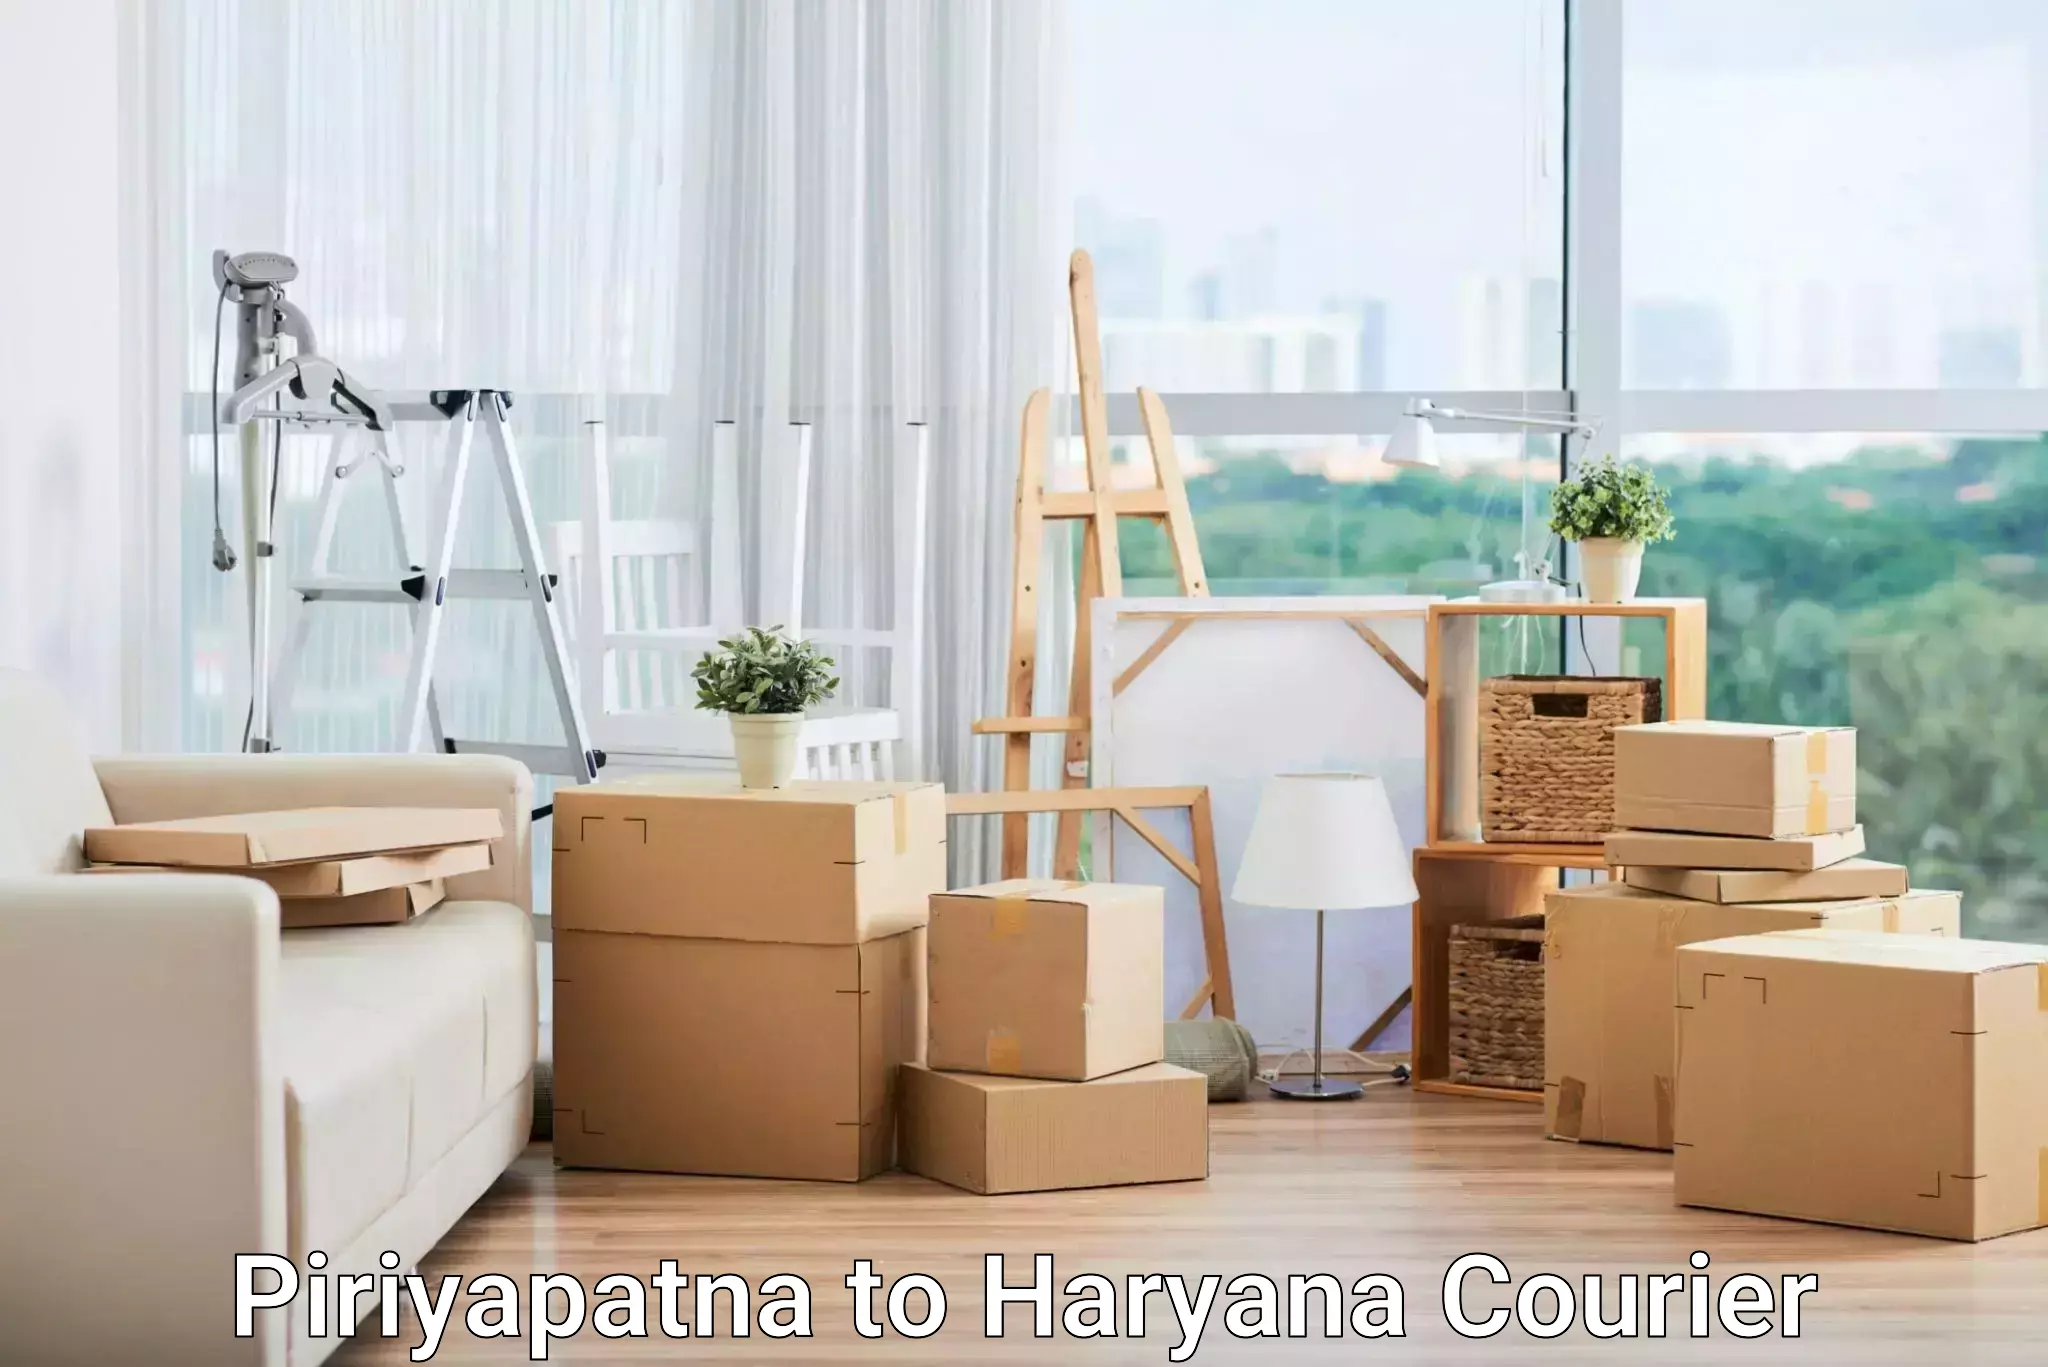 High-capacity shipping options Piriyapatna to Haryana